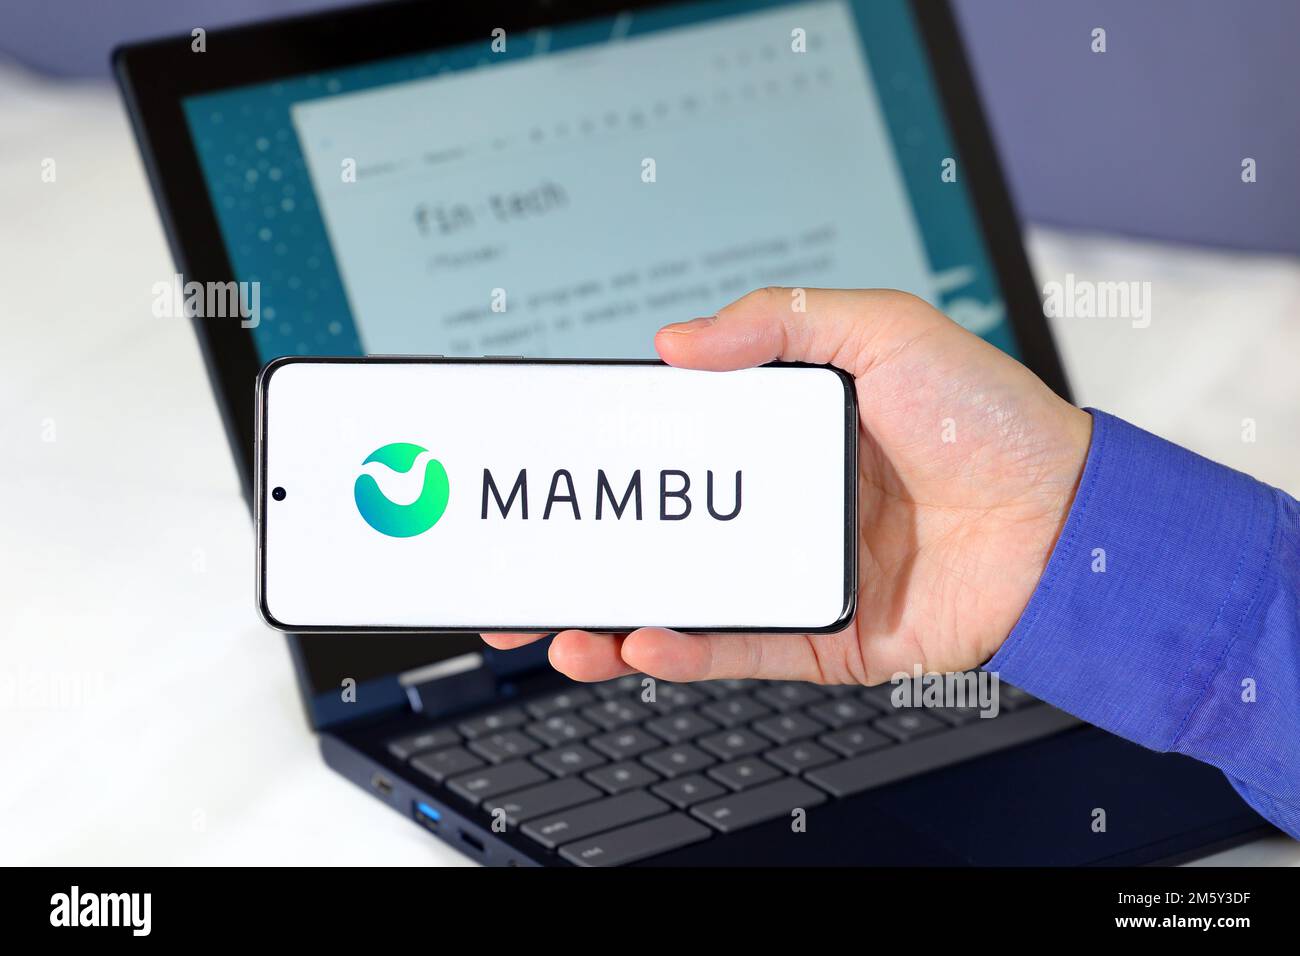 Logo von Mambu auf einem Smartphone vor einem Computer. Mambu ist ein Fintech-Unternehmen, das sich auf Cloud-Banking-Software als Service spezialisiert hat. Stockfoto